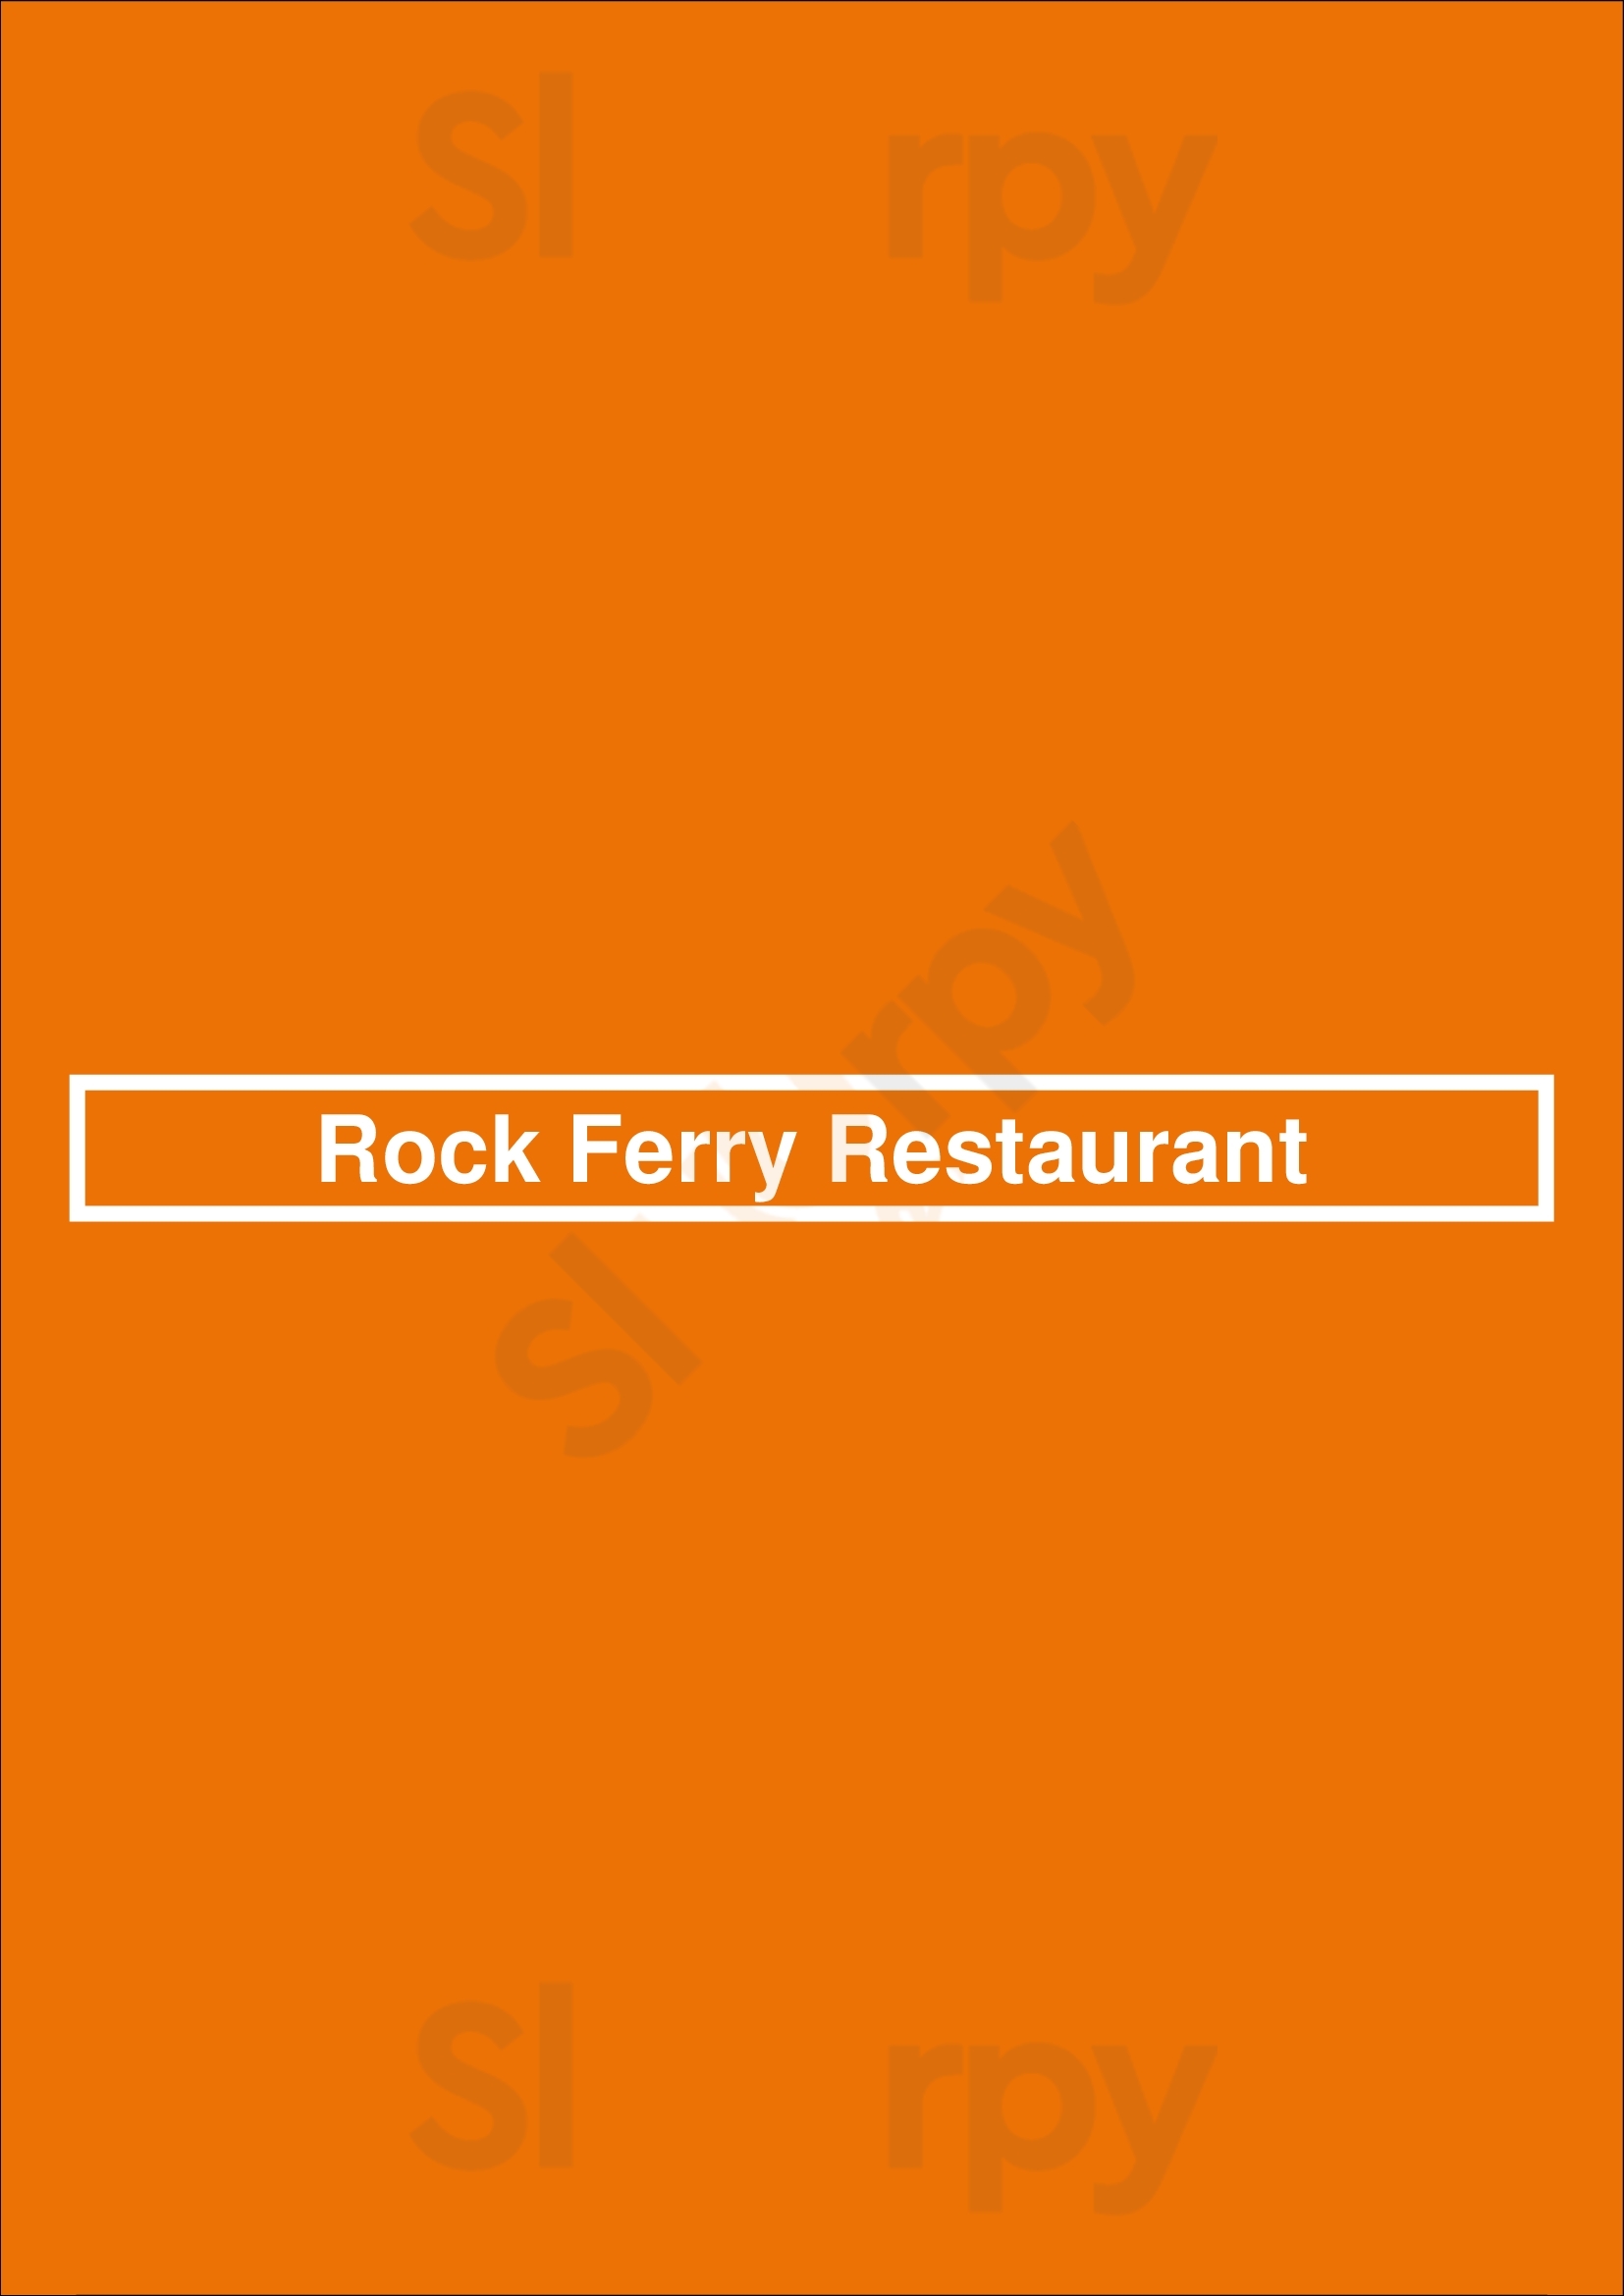 Rock Ferry Restaurant Blenheim Menu - 1